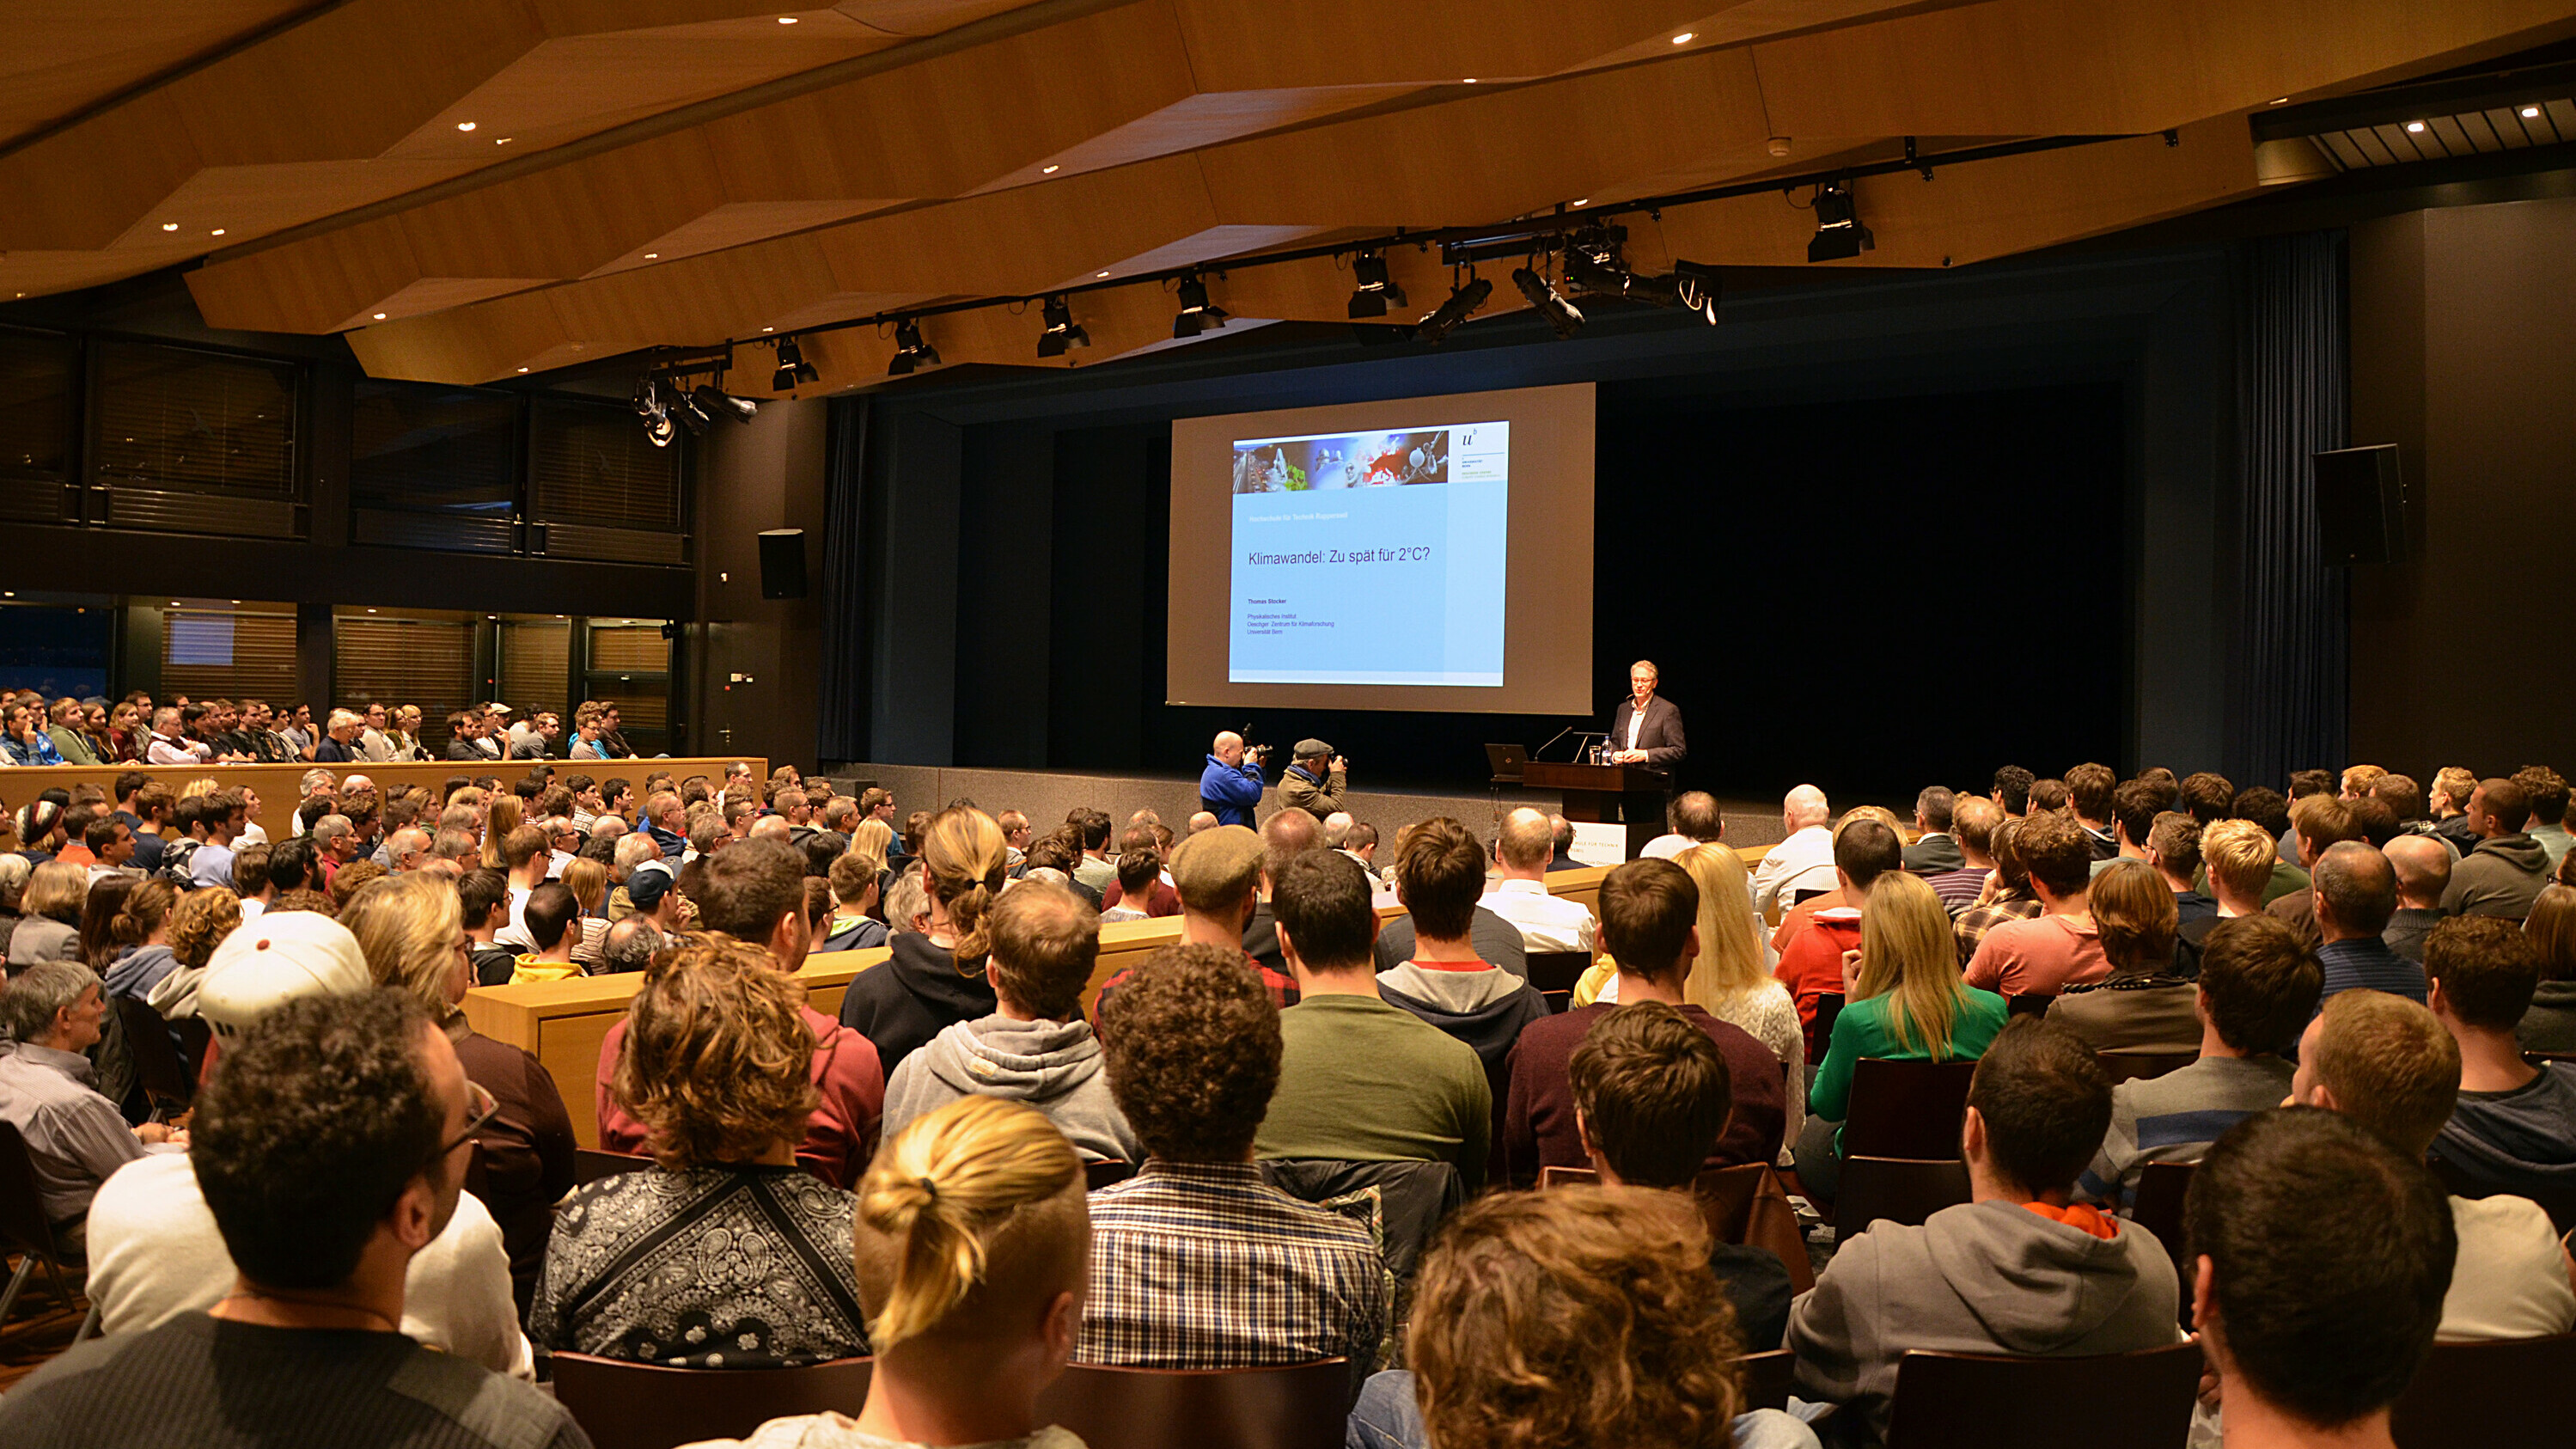 Der Klimavortrag von Prof. Dr. Thomas Stocker hat viele Interessierte an die OST in Rapperswil-Jona gelockt.